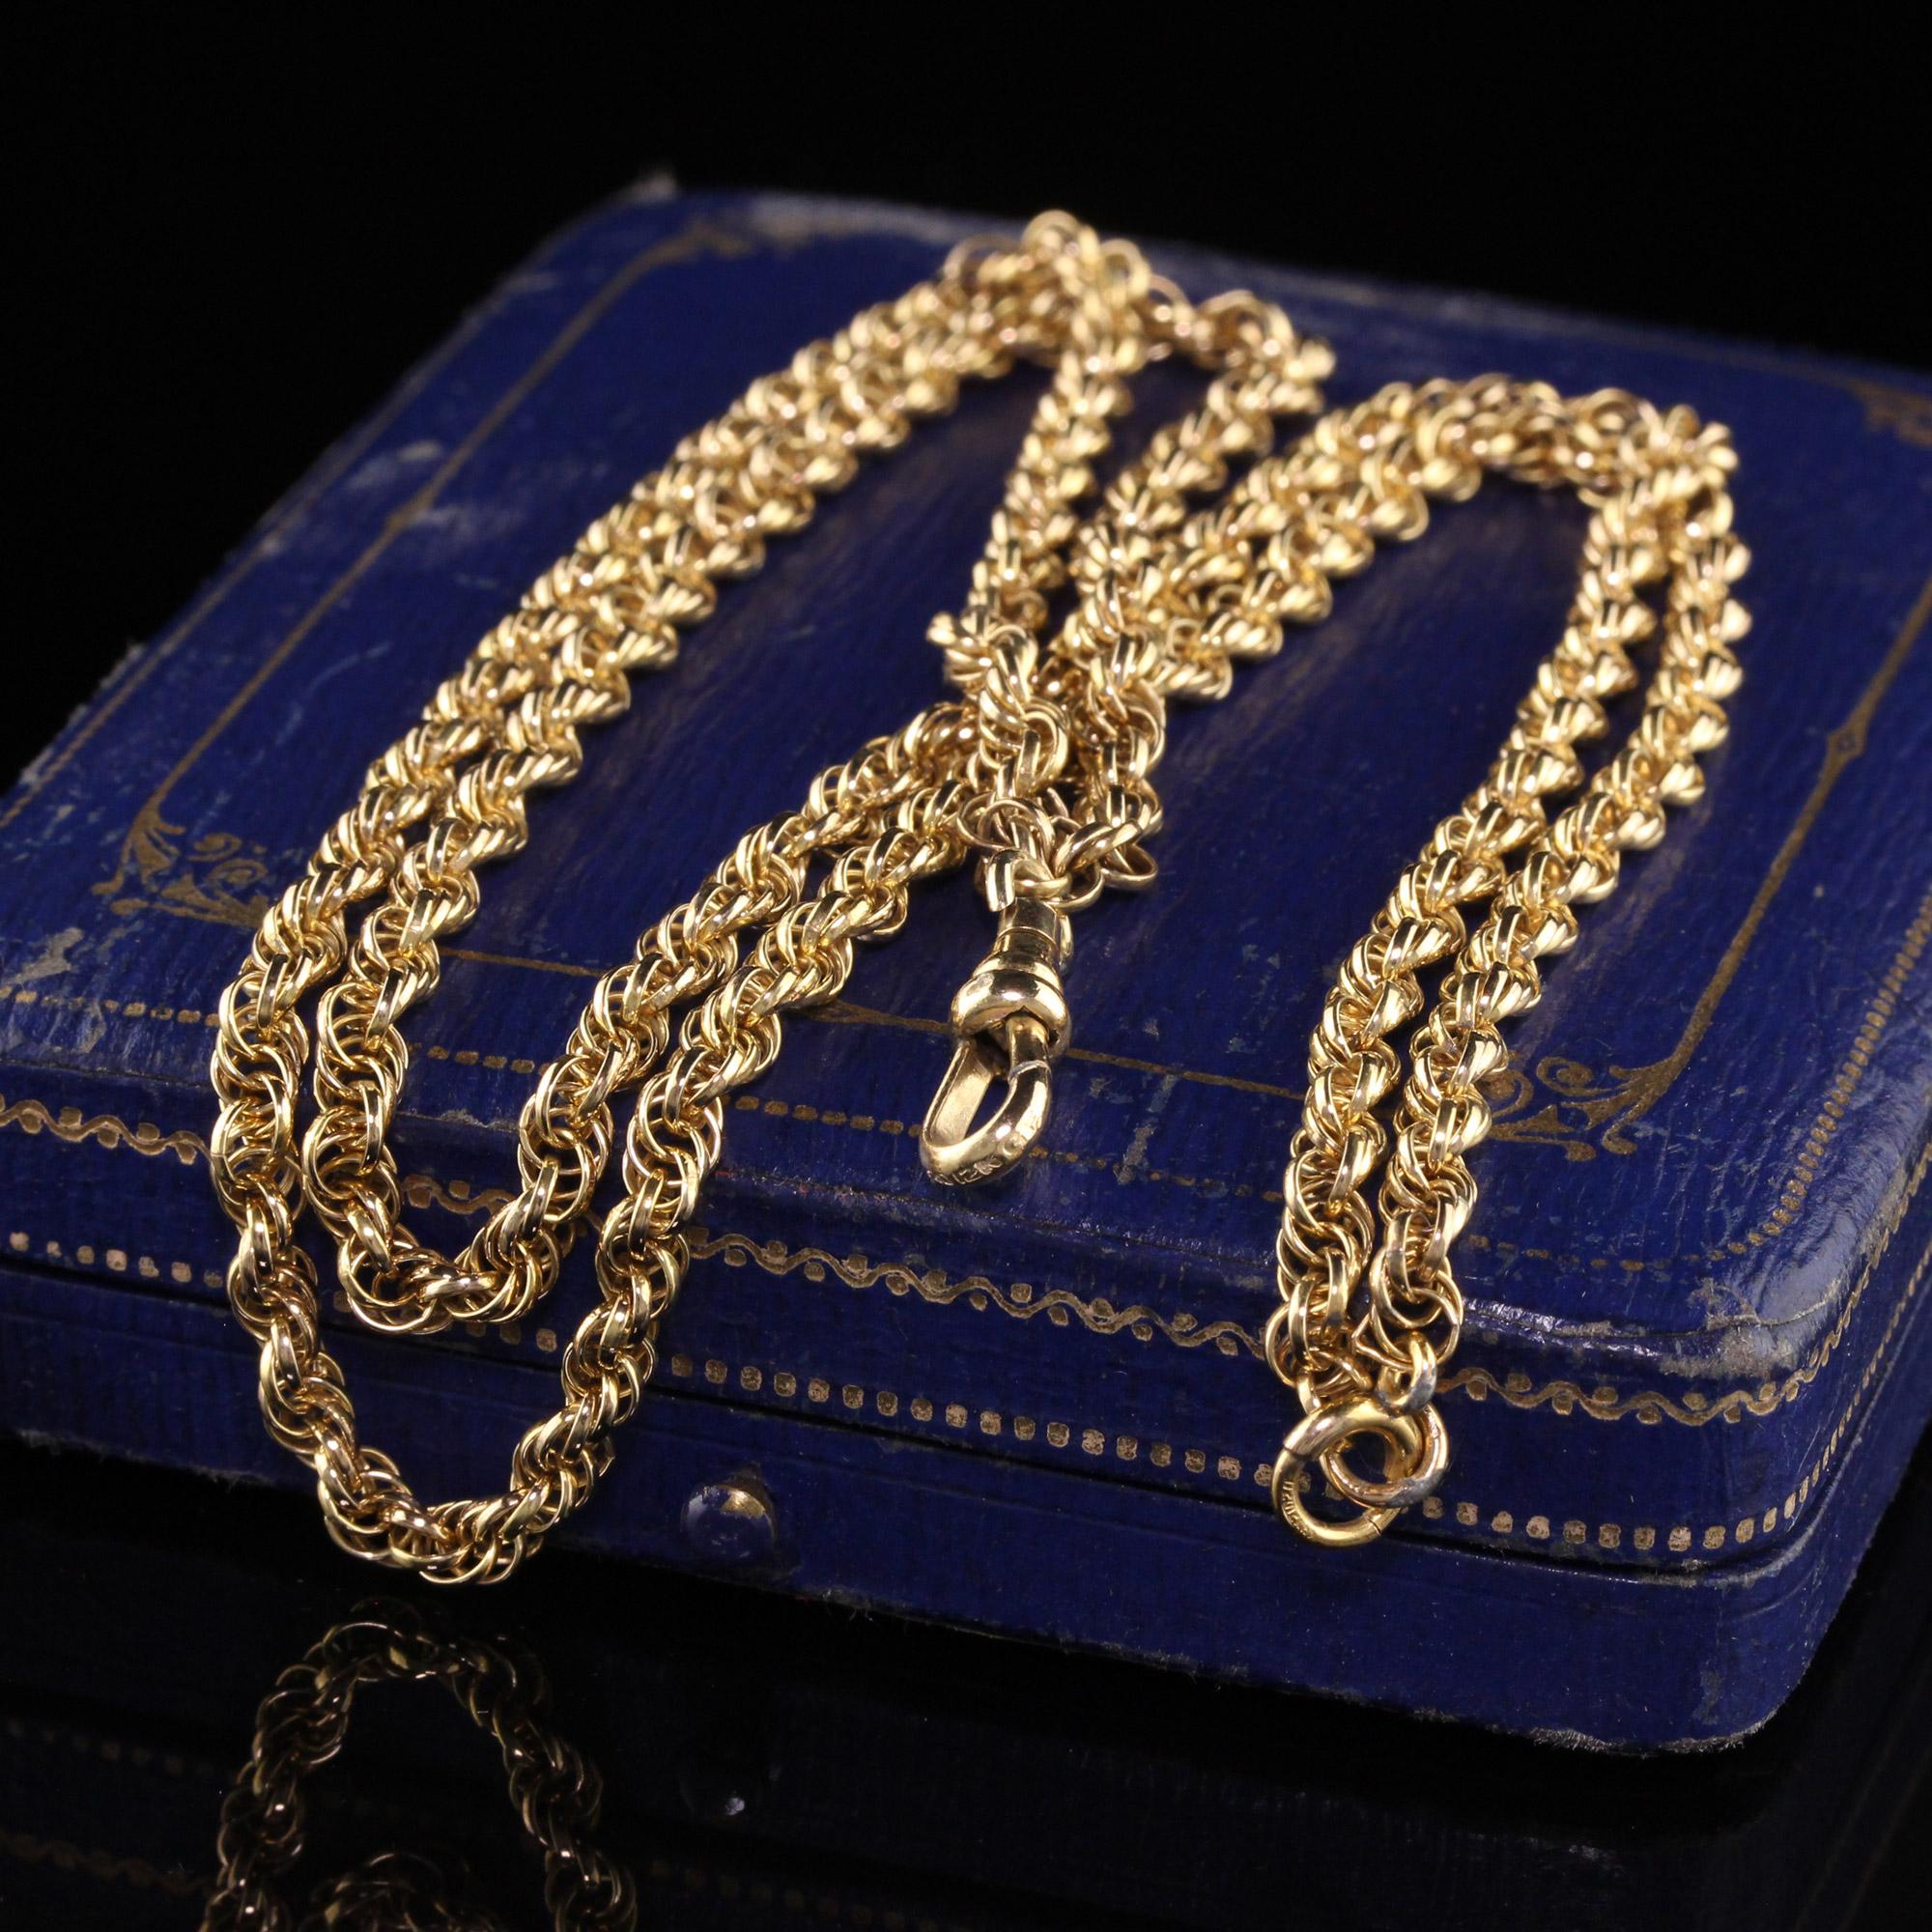 Schöne antike viktorianische 10K Gelbgold Rope Link Kette Halskette - 27 Zoll. Diese wunderschöne Halskette ist aus 10 Karat Gelbgold gefertigt. Die Kette besteht aus einer handgefertigten, losen Seilkette und hat einen Anhänger, an dem ein Anhänger